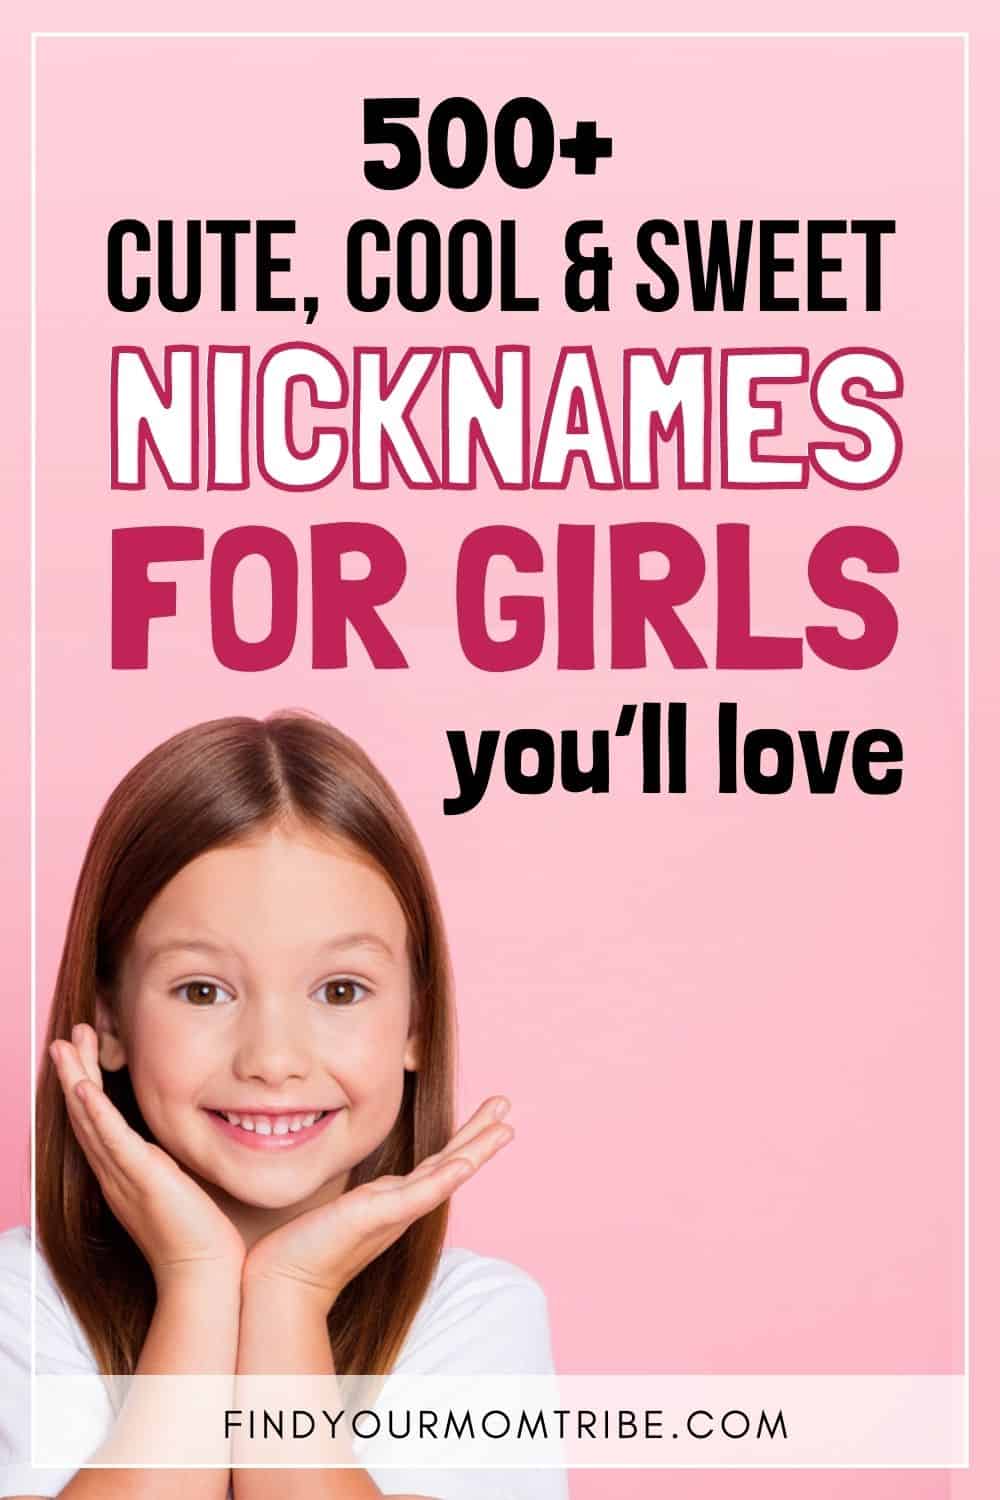 Nicknames For Girls Pinterest